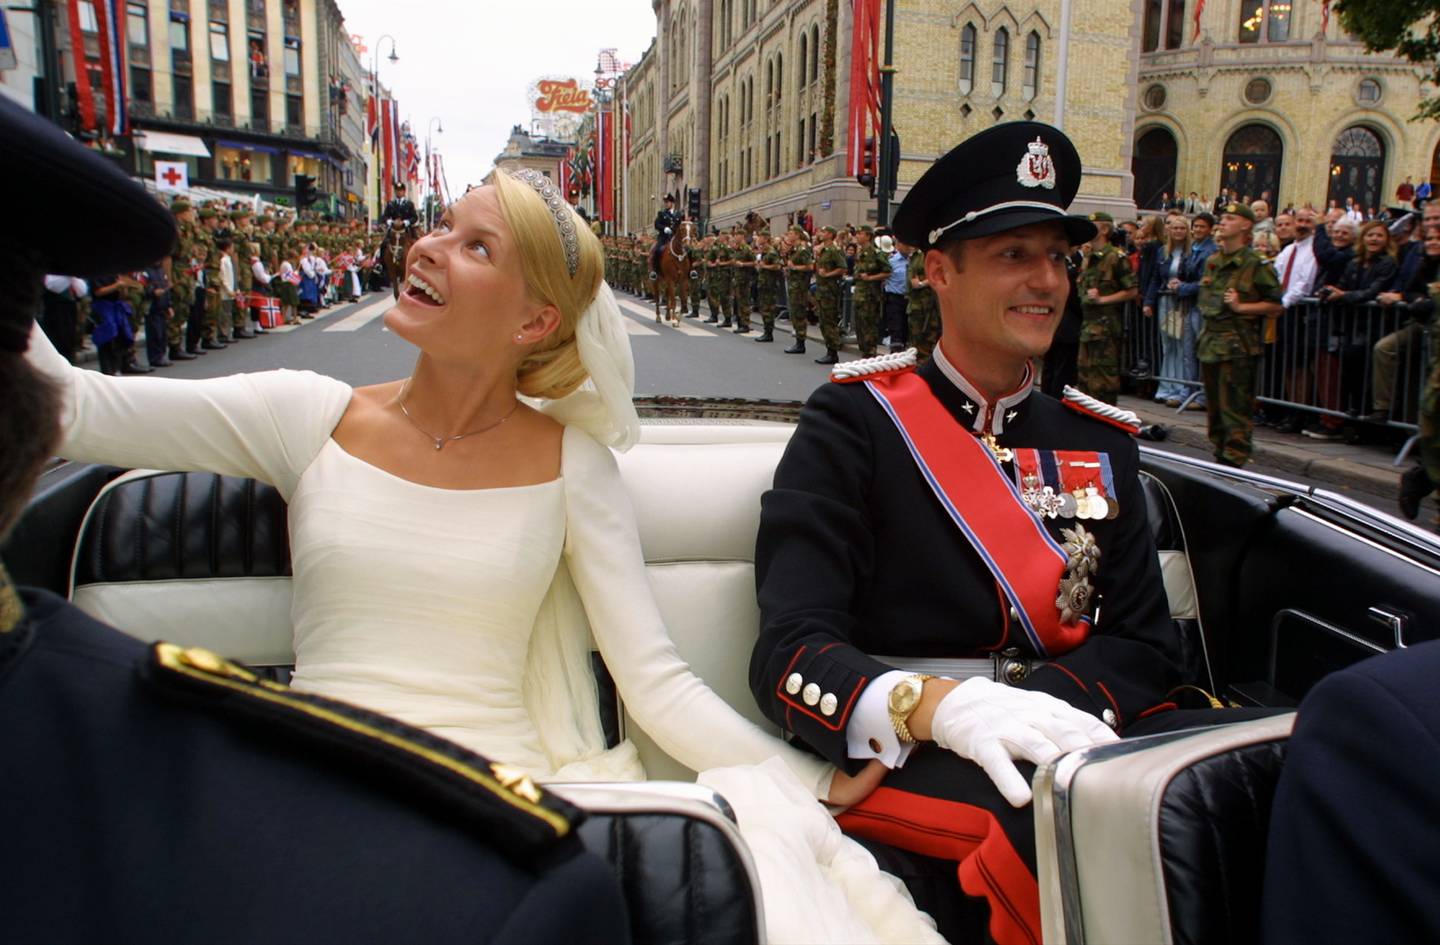 Kronprins Haakon og kronprinsesse Mette-Marit Tjessem Høiby på vei opp Karl Johan i åpen bil 25. august 2001. Samtidig jobbet Roy på Grand Hotel som huset kronprinsparets kongelige bryllupsgjester fra hele Europa.